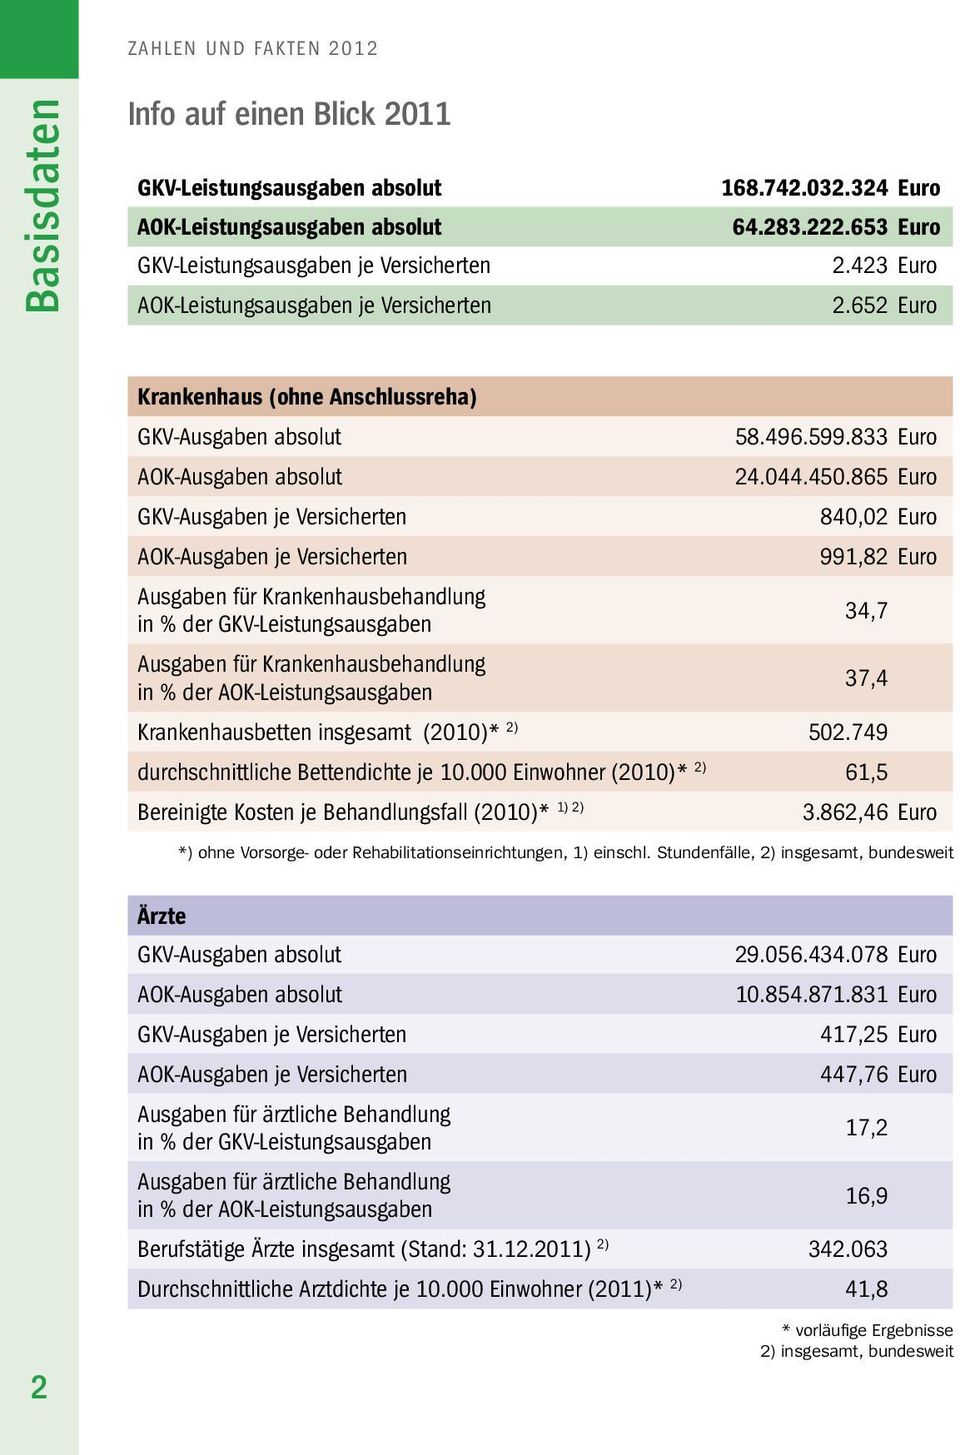 865 euro GKV-Ausgaben je Versicherten 840,02 euro AOK-Ausgaben je Versicherten 991,82 euro Ausgaben für Krankenhausbehandlung in % der GKV-leistungsausgaben 34,7 Ausgaben für Krankenhausbehandlung in